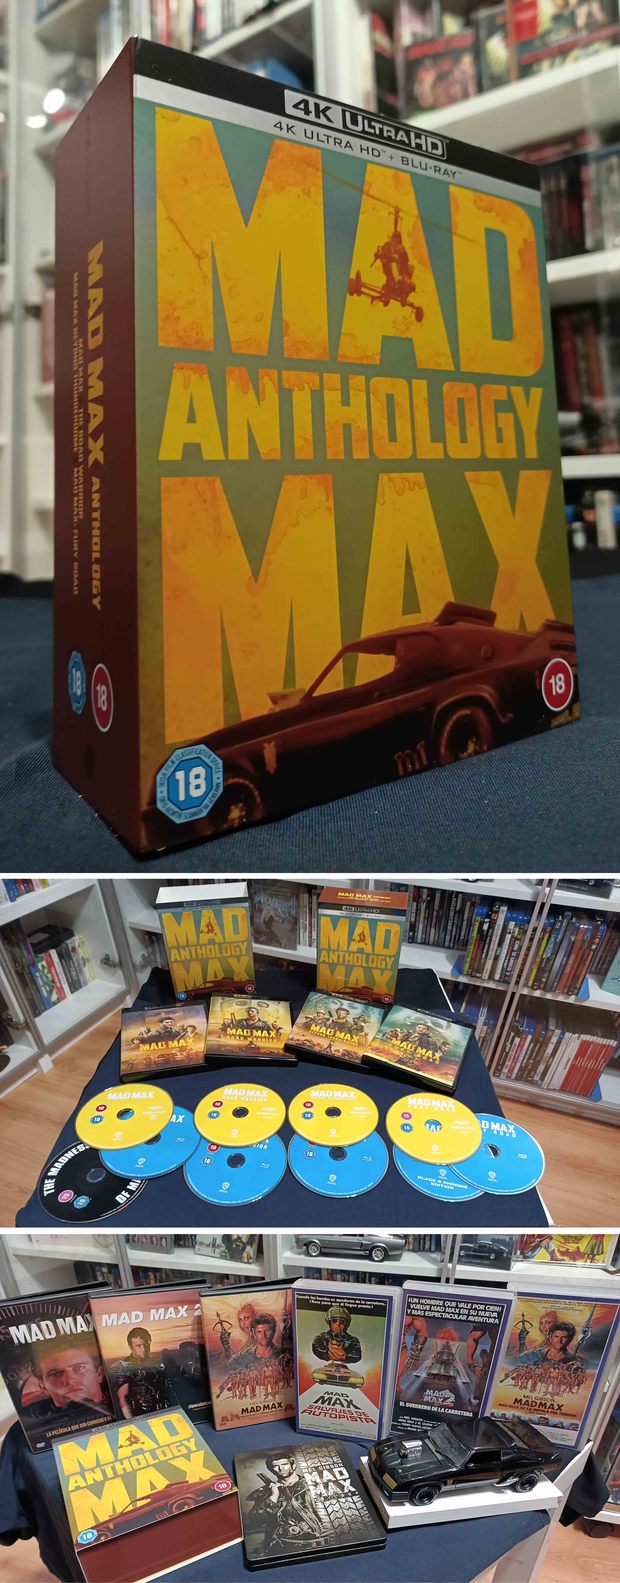 Edición de UK de la Saga Mad Max en 4kUHD por 60,16€ quedándose en 48,13€ con un descuento.